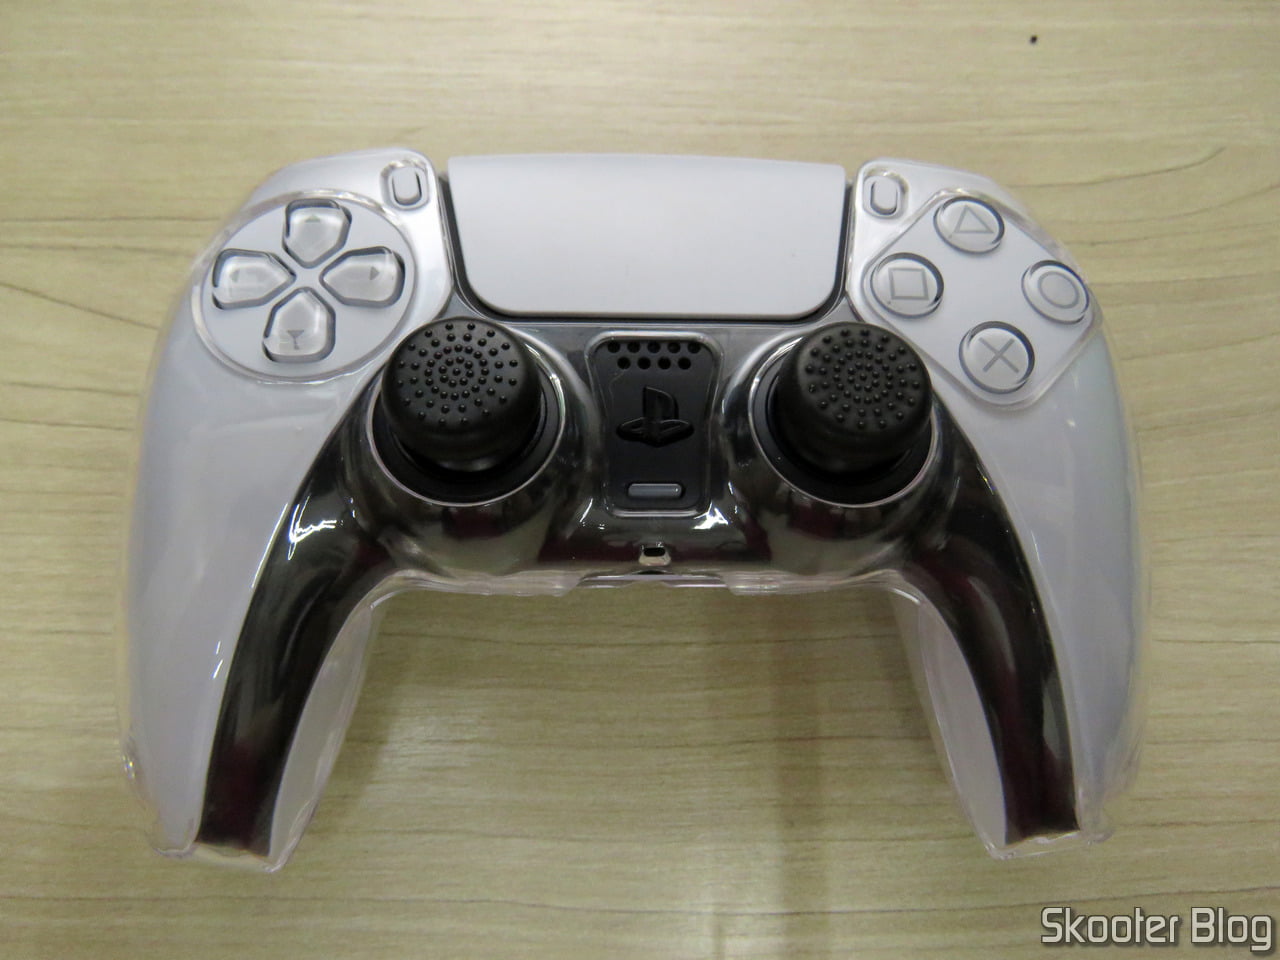 Controles DualSense do PS5 são vistos no Walmart dos EUA - PSX Brasil